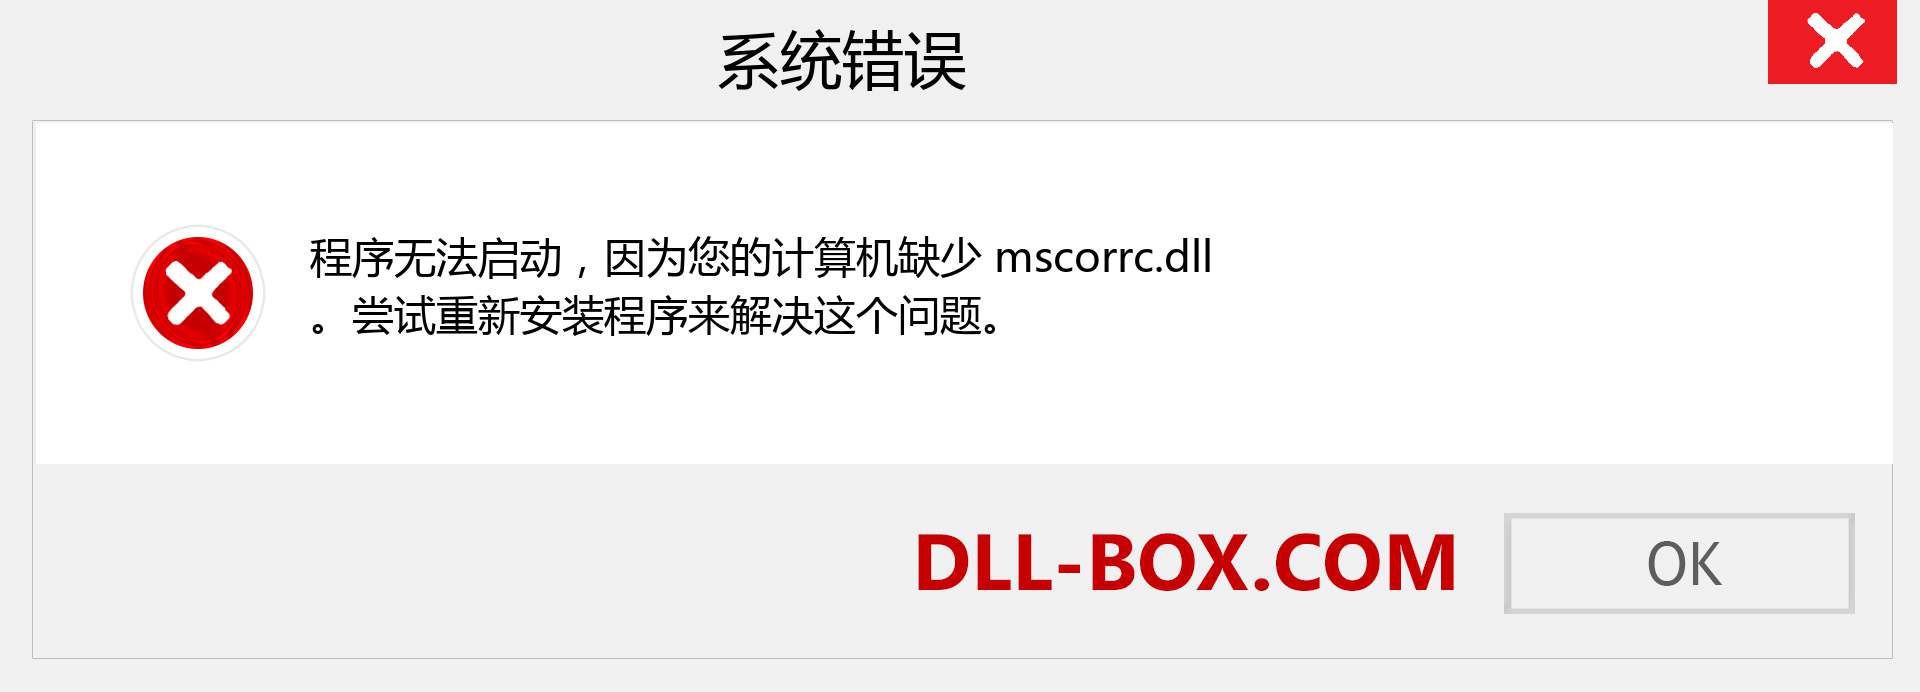 mscorrc.dll 文件丢失？。 适用于 Windows 7、8、10 的下载 - 修复 Windows、照片、图像上的 mscorrc dll 丢失错误